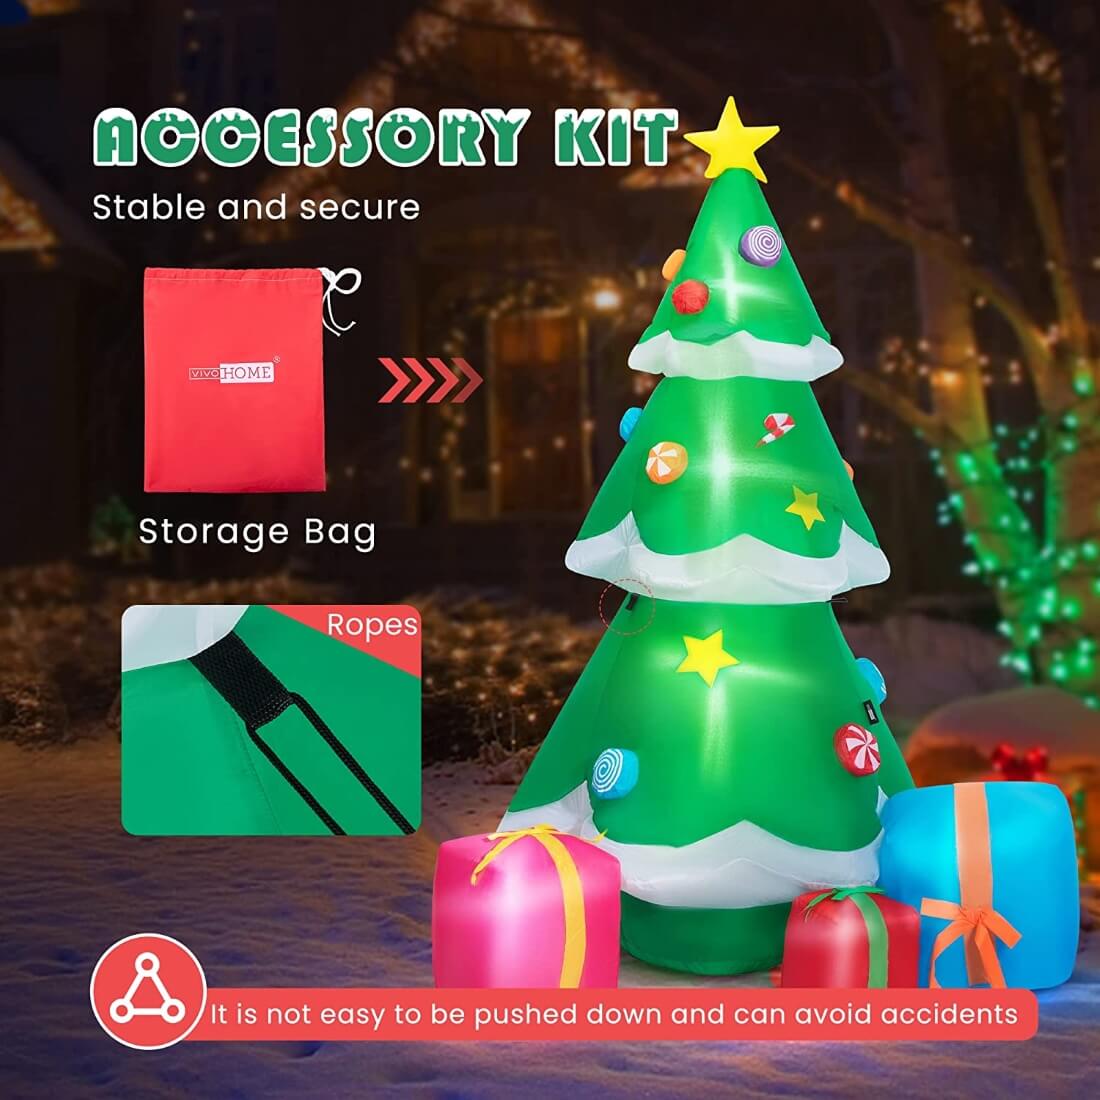 Christmas Shop - Christmas Trees, Decor & Gifts